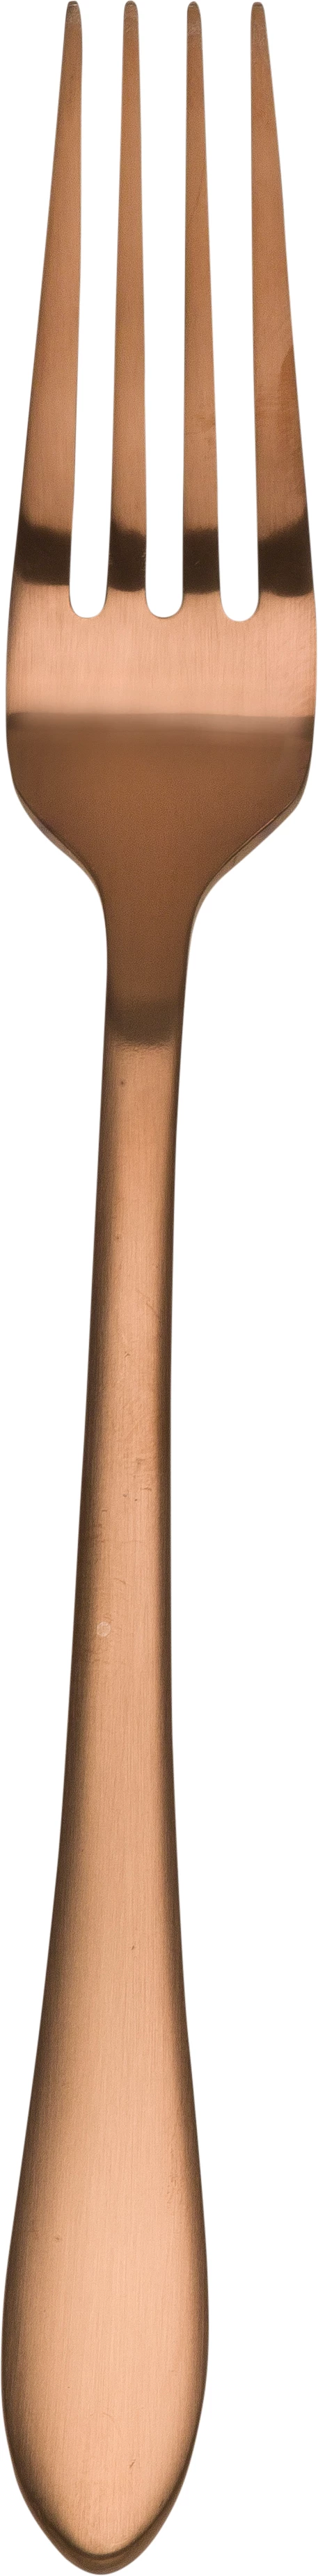 Øland spisegaffel, rosaguld, 20 cm